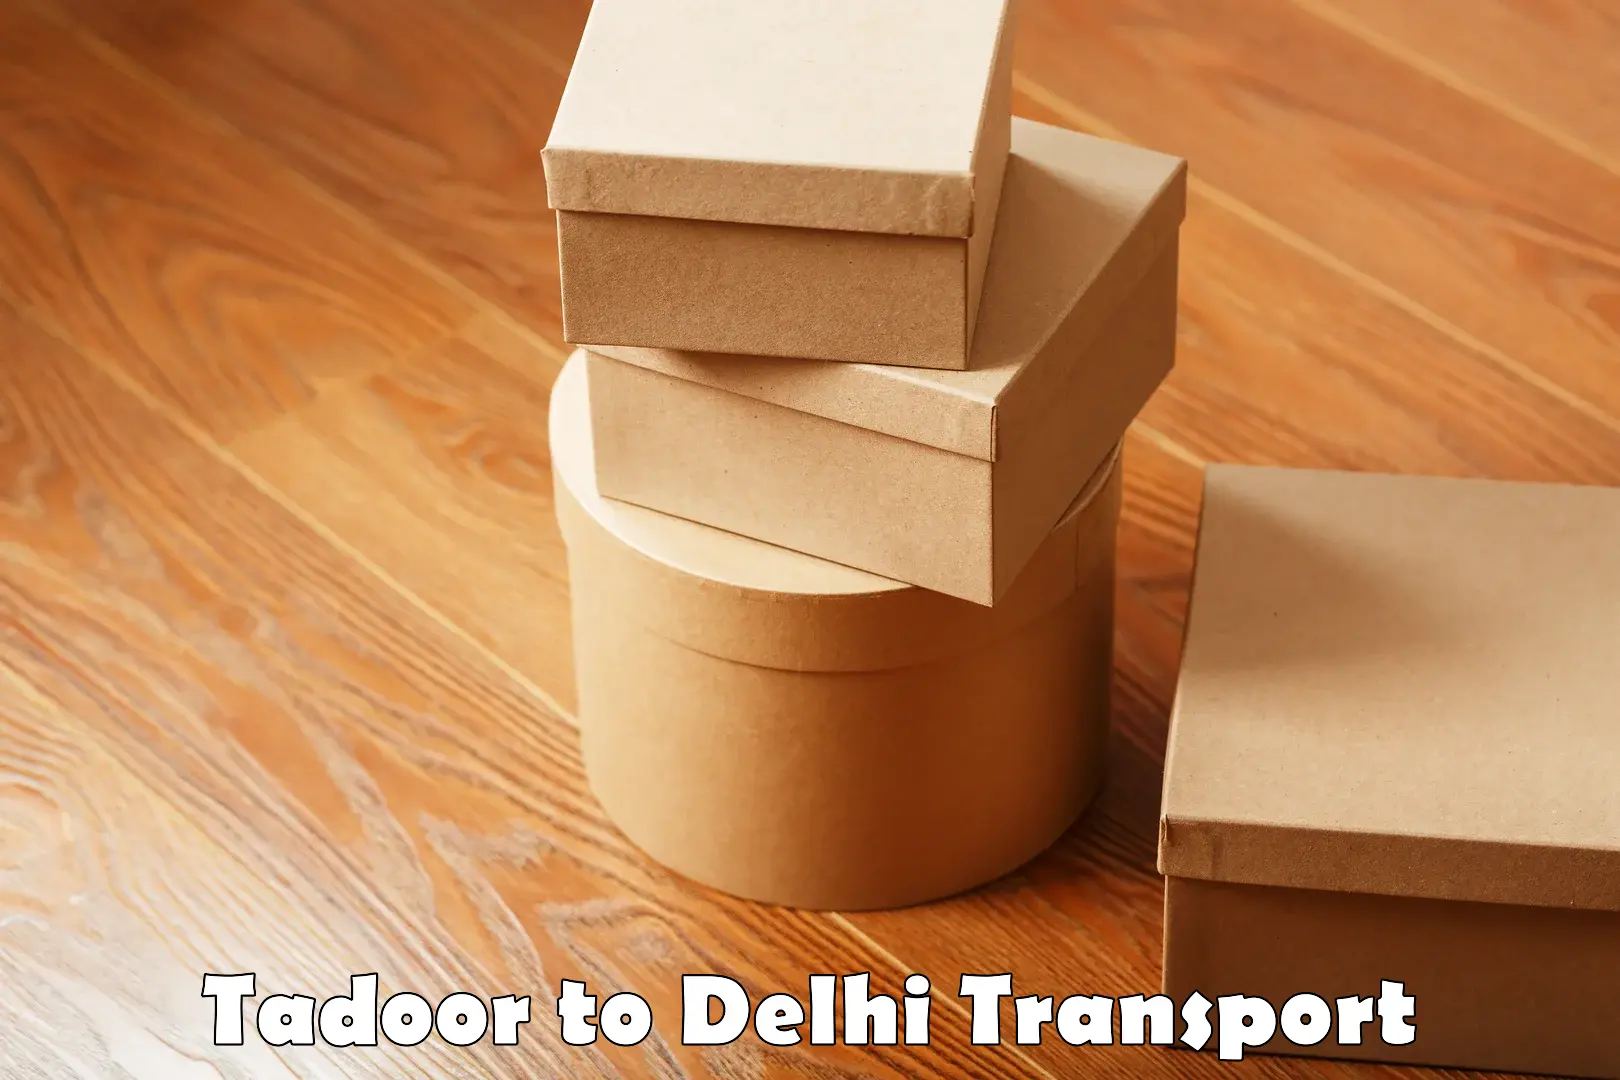 Express transport services Tadoor to East Delhi